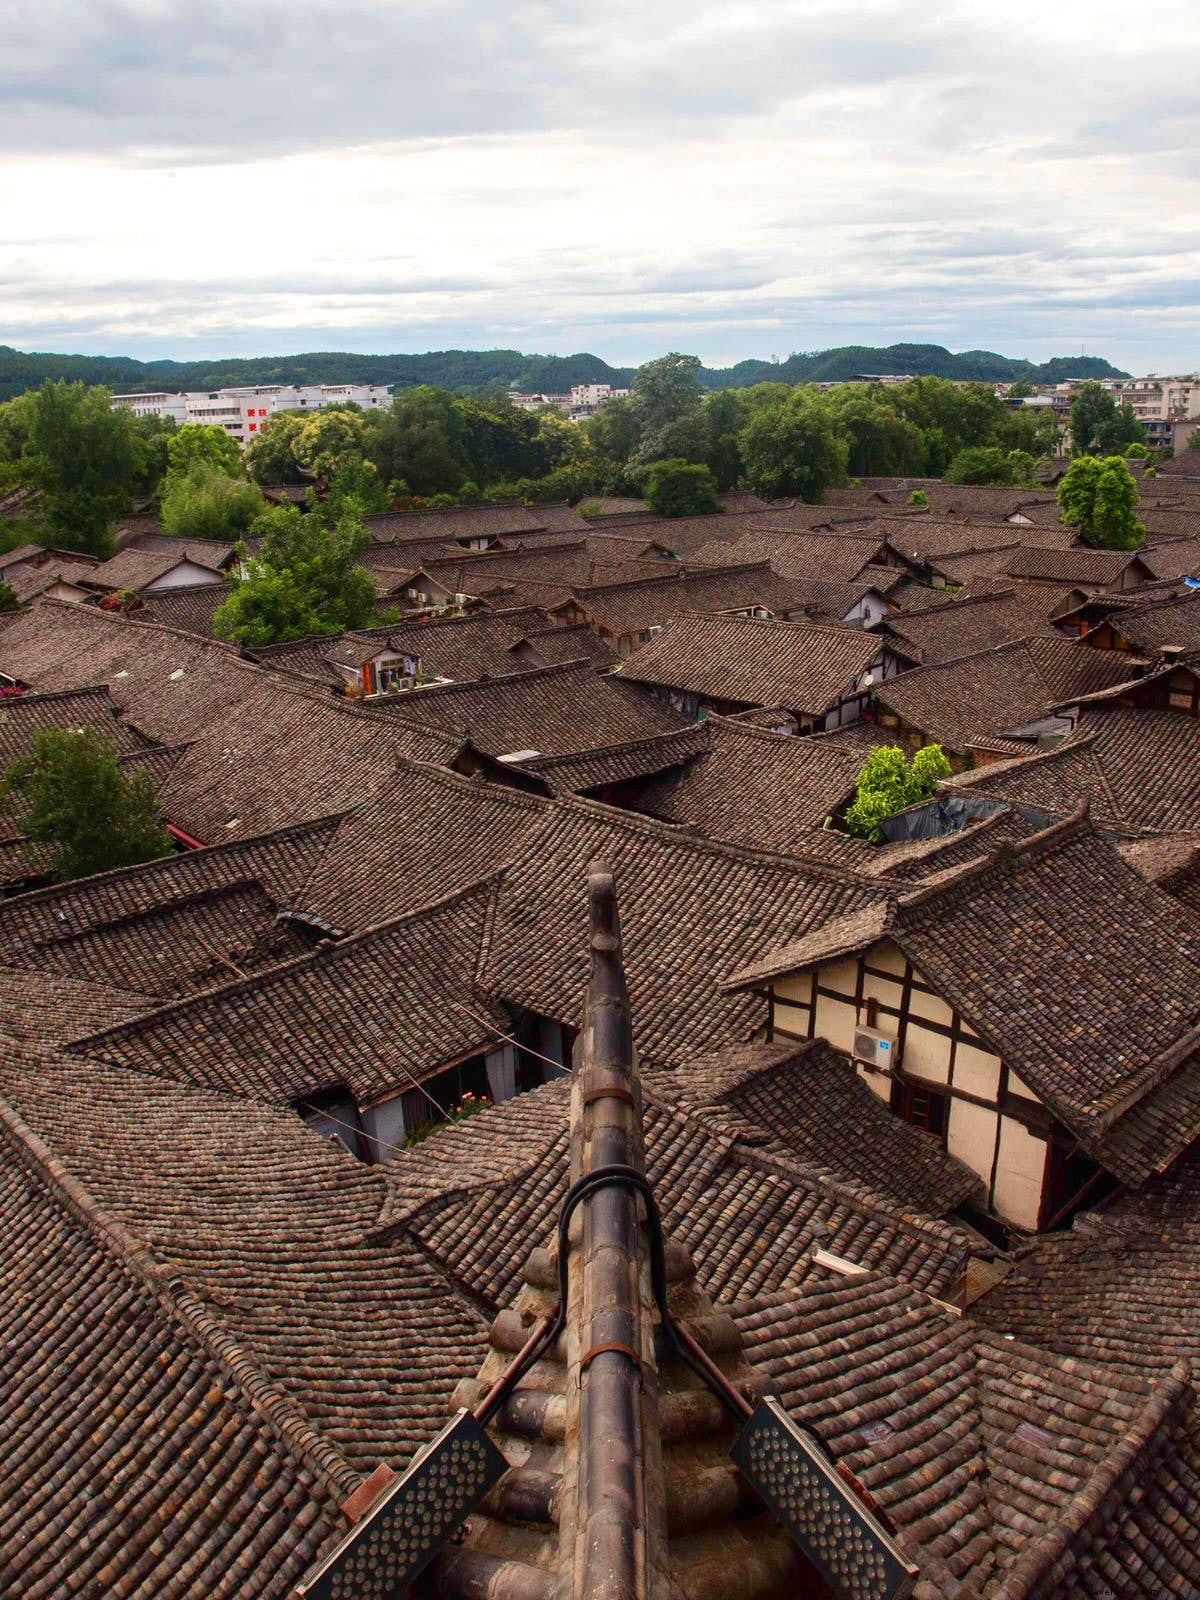 Melambat di kota tua paling menawan di Sichuan 